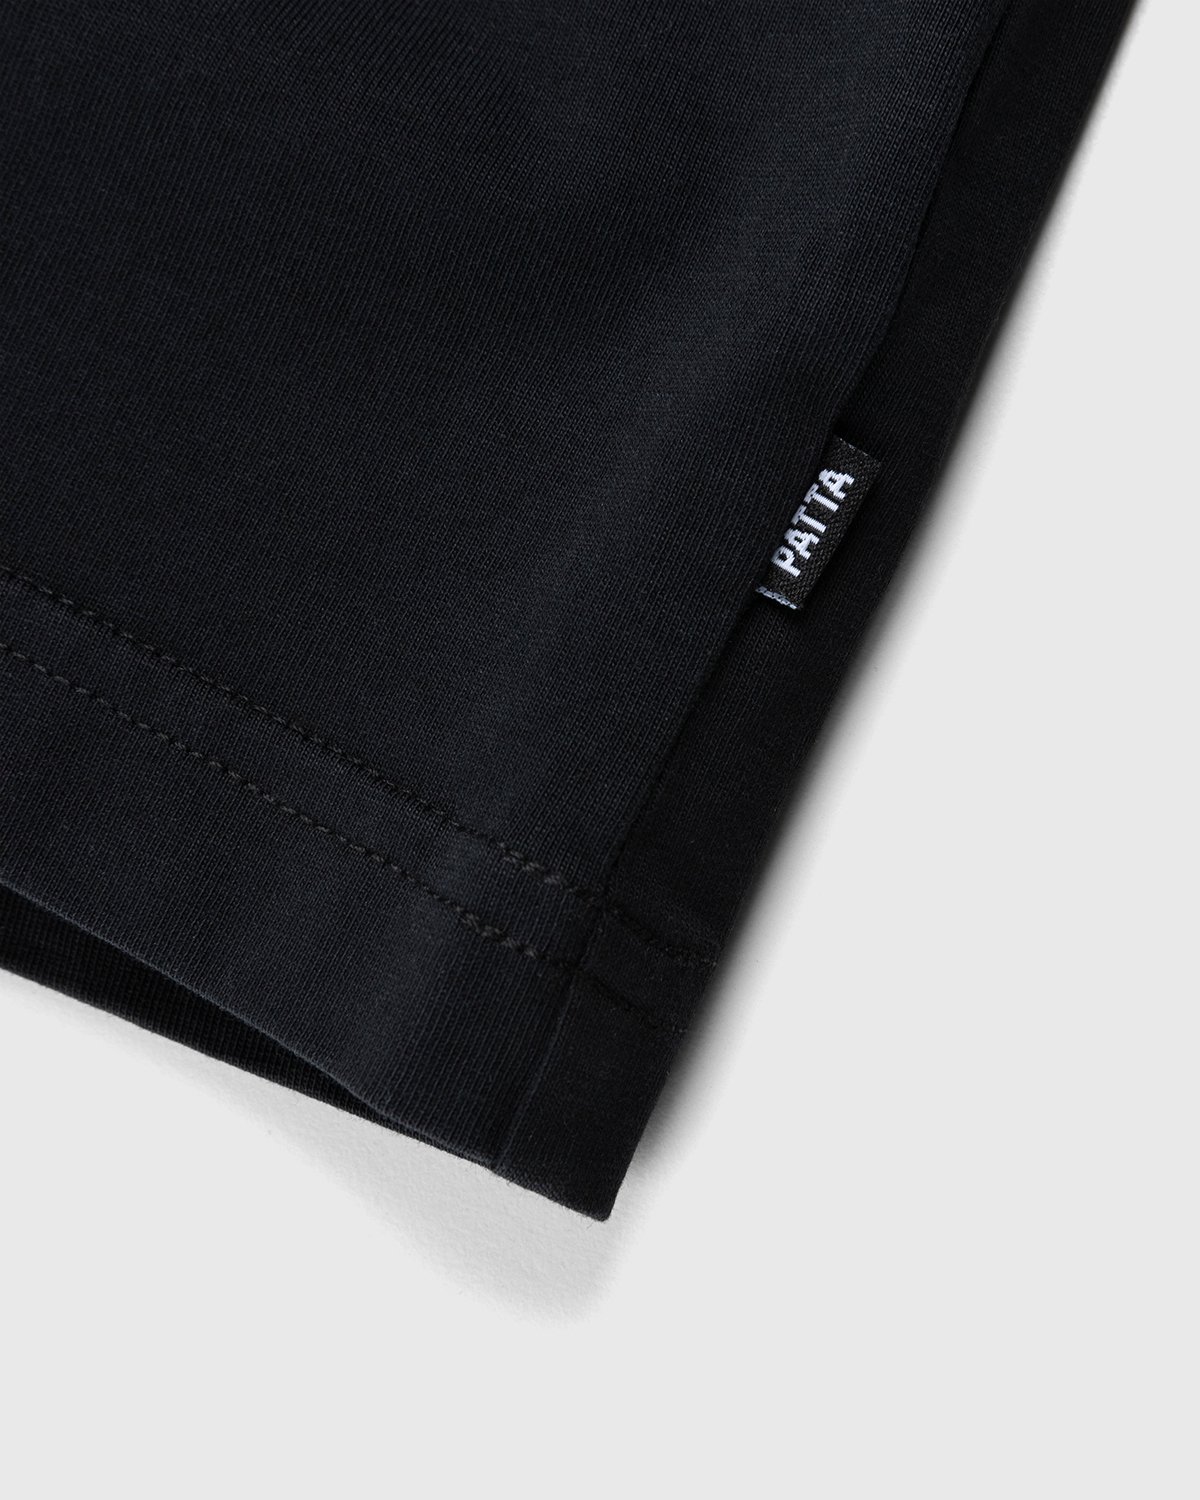 Patta – Basic Washed Pocket T-Shirt Black | Highsnobiety Shop